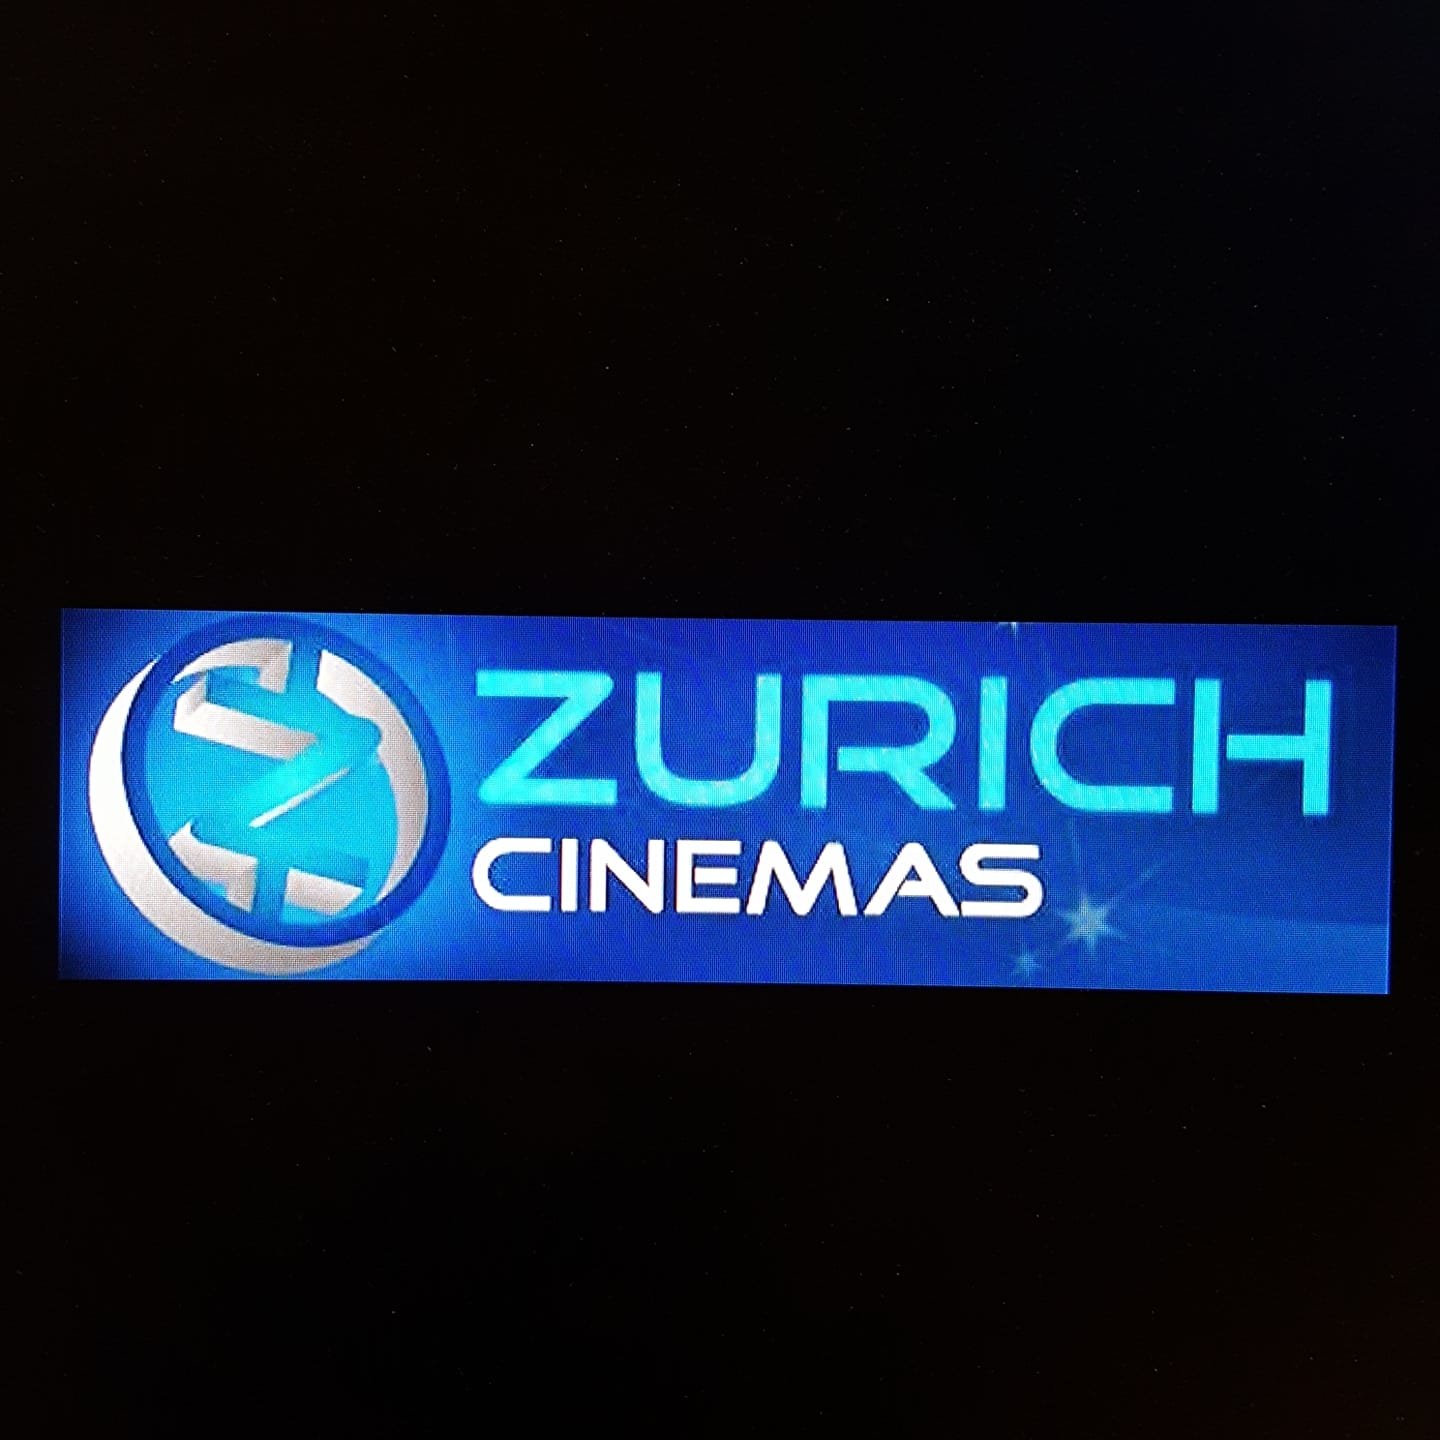 Rotterdam Square Cinema/Zurich Cinemas